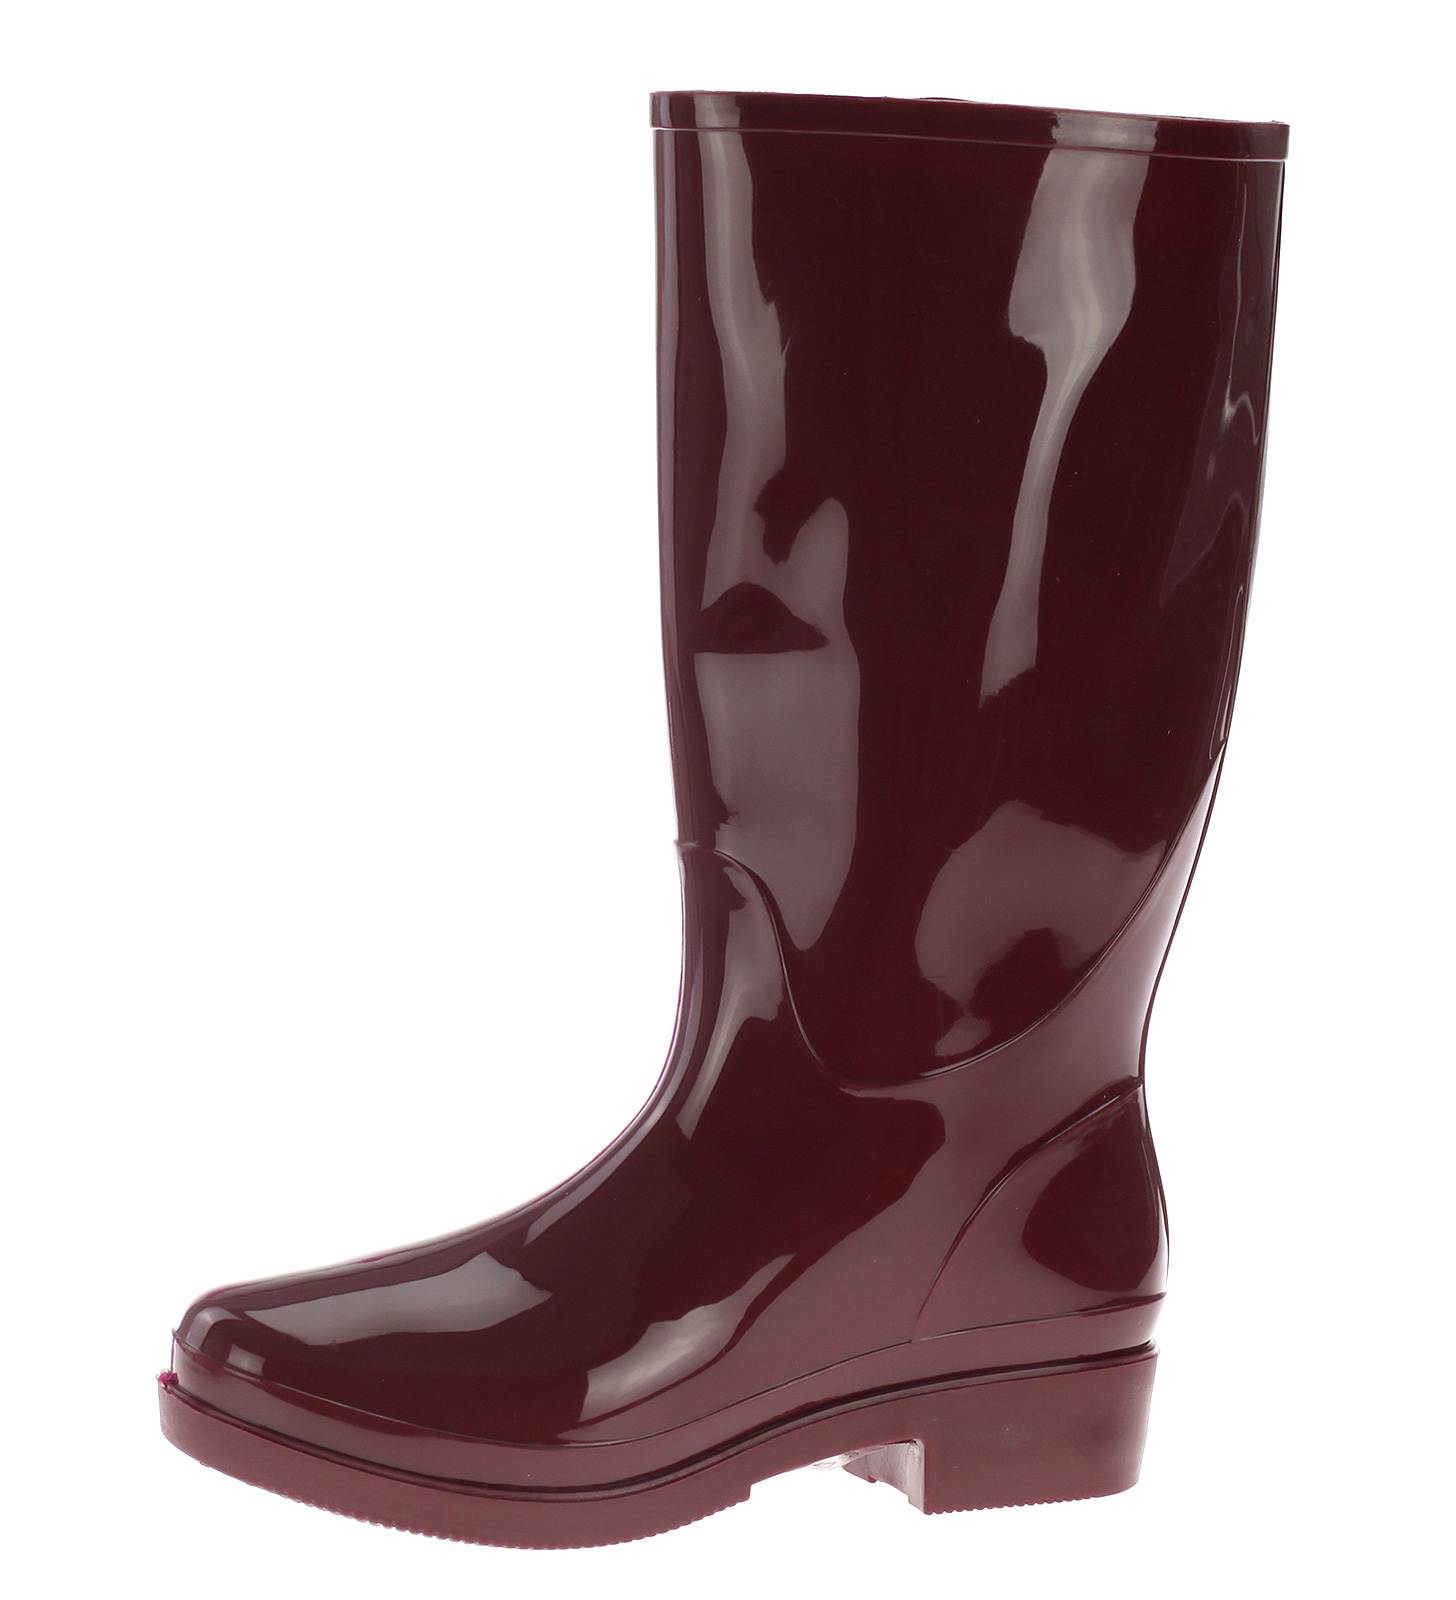 Damen Gummistiefel Regenstiefel Gummischuhe Lack Stiefel Stiefelette Boots HM-23